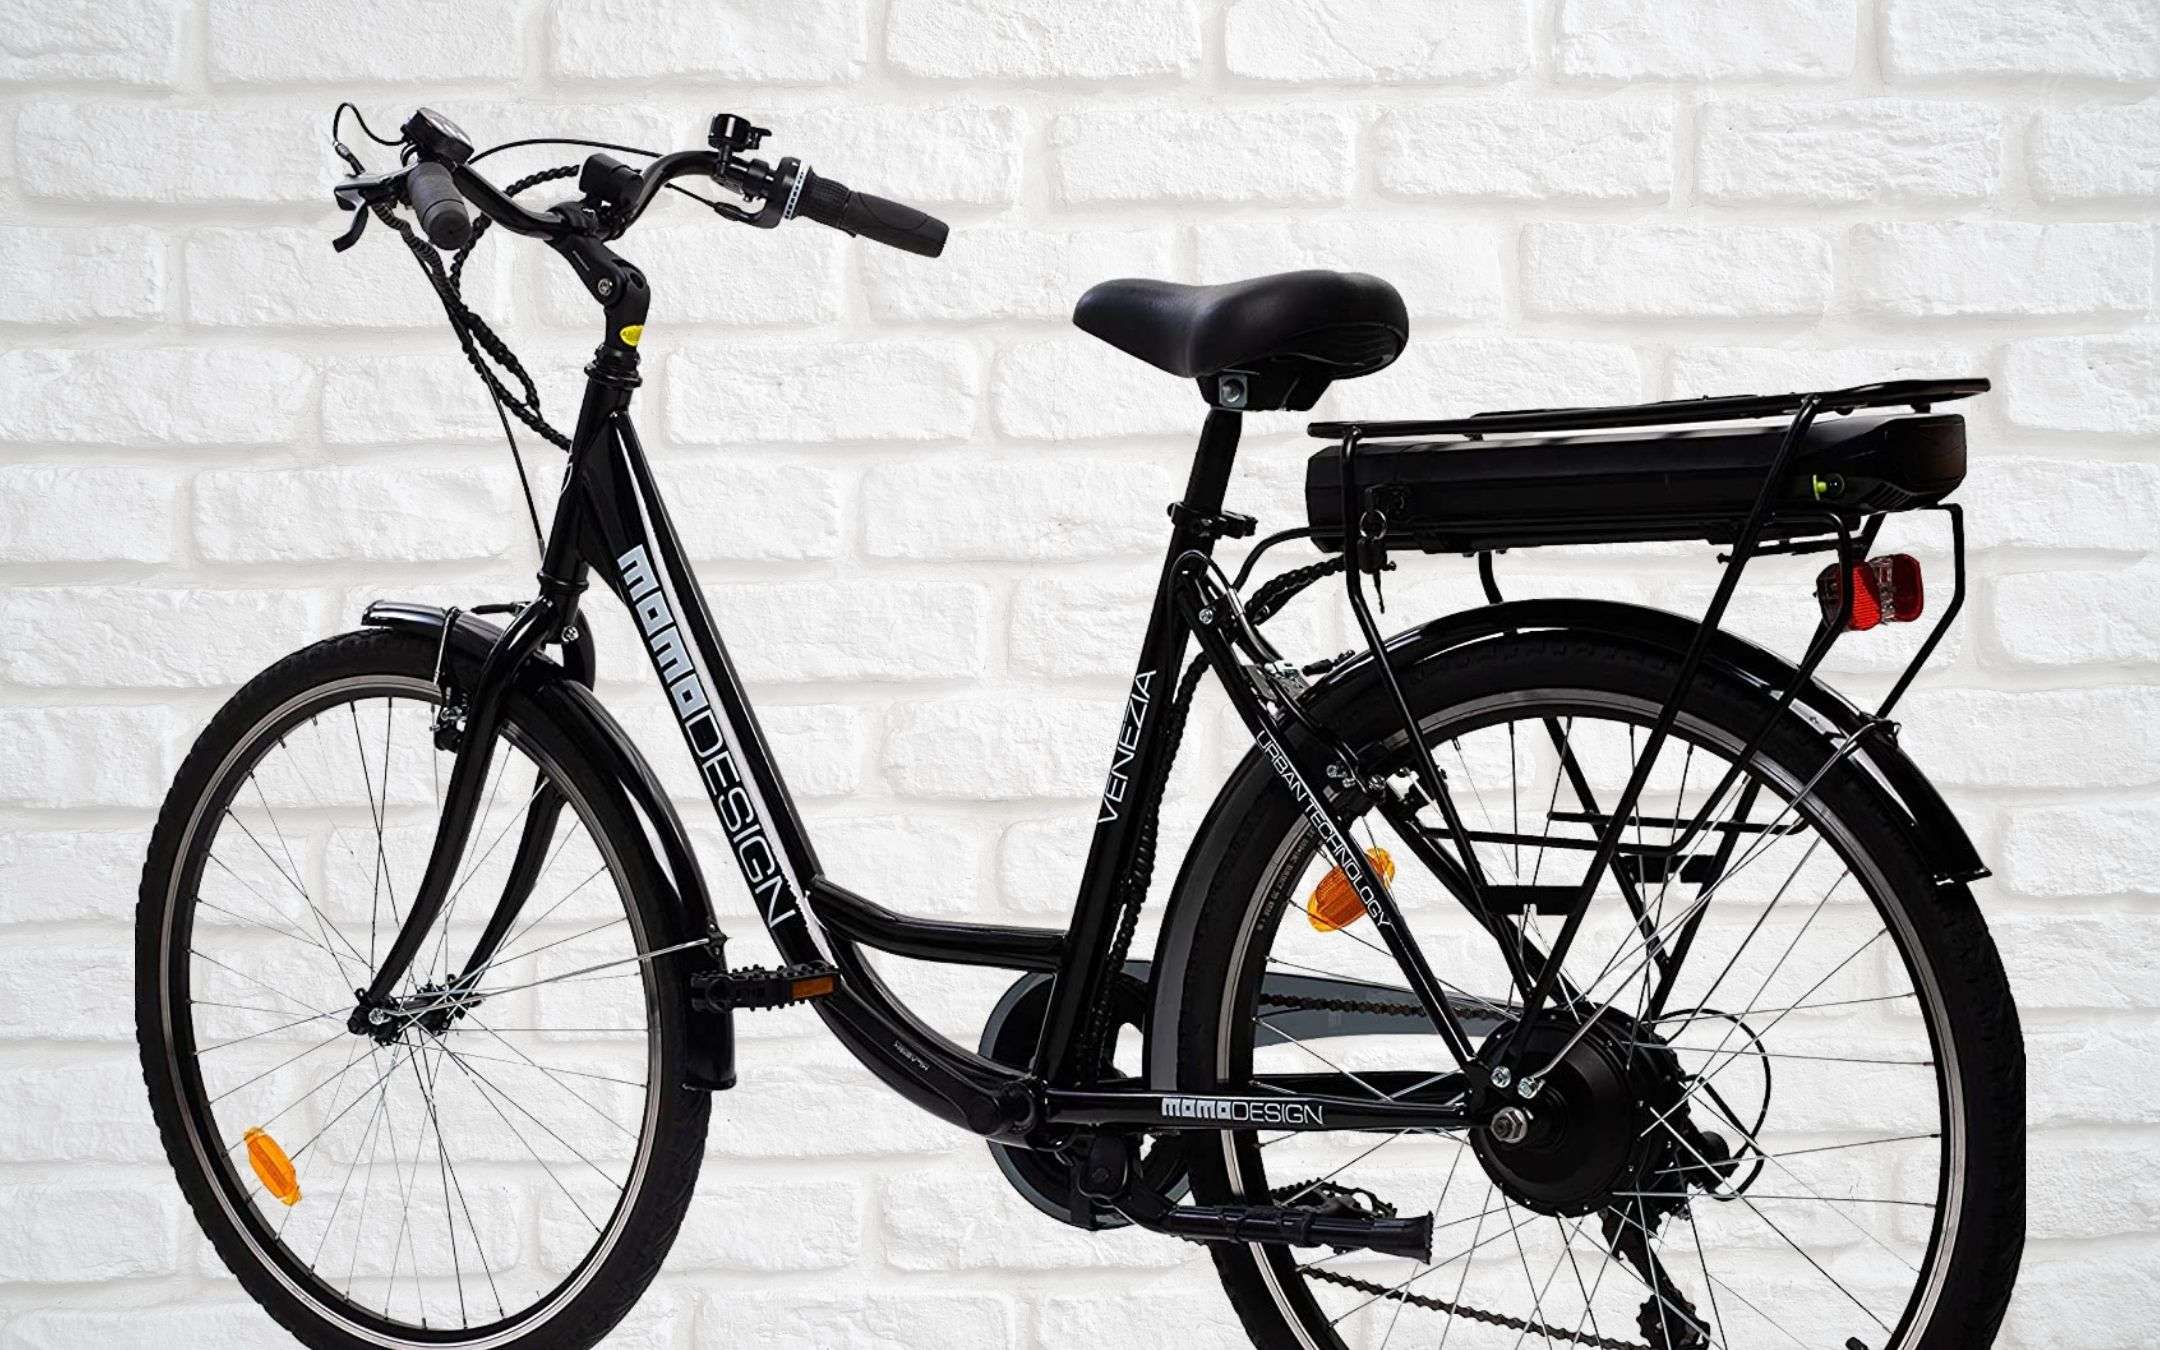 Momo Design: bici elettrica a prezzo SHOCK (664€)